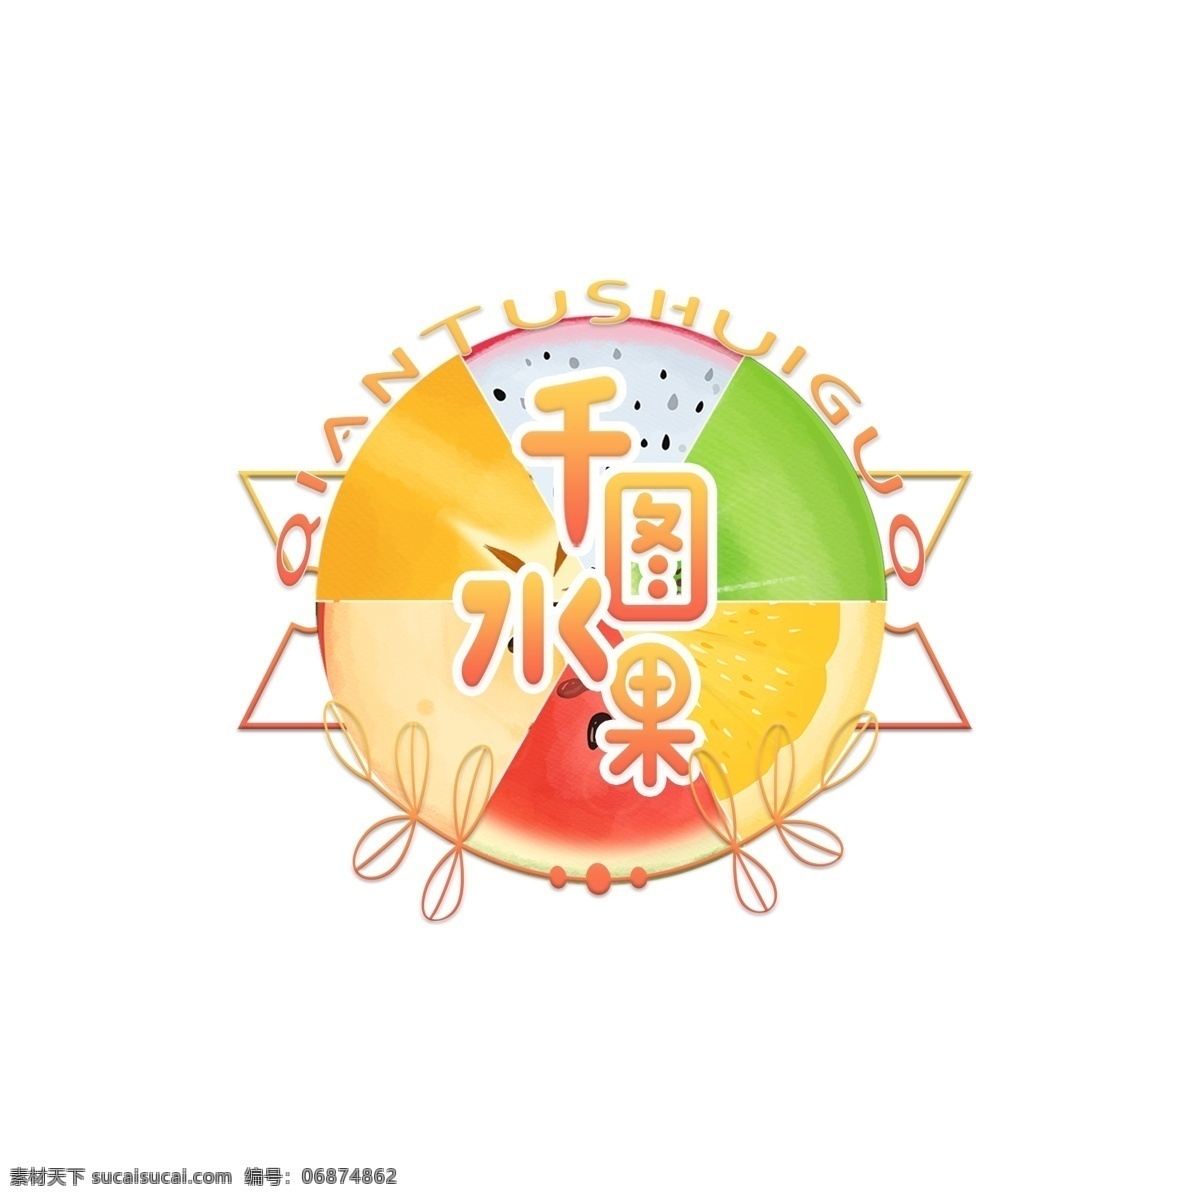 六 种 水果 片 手绘 彩色 水果店 圆形 logo 简洁 西瓜 苹果 火龙果 猕猴桃 杨桃 柠檬 水果片 logo设计